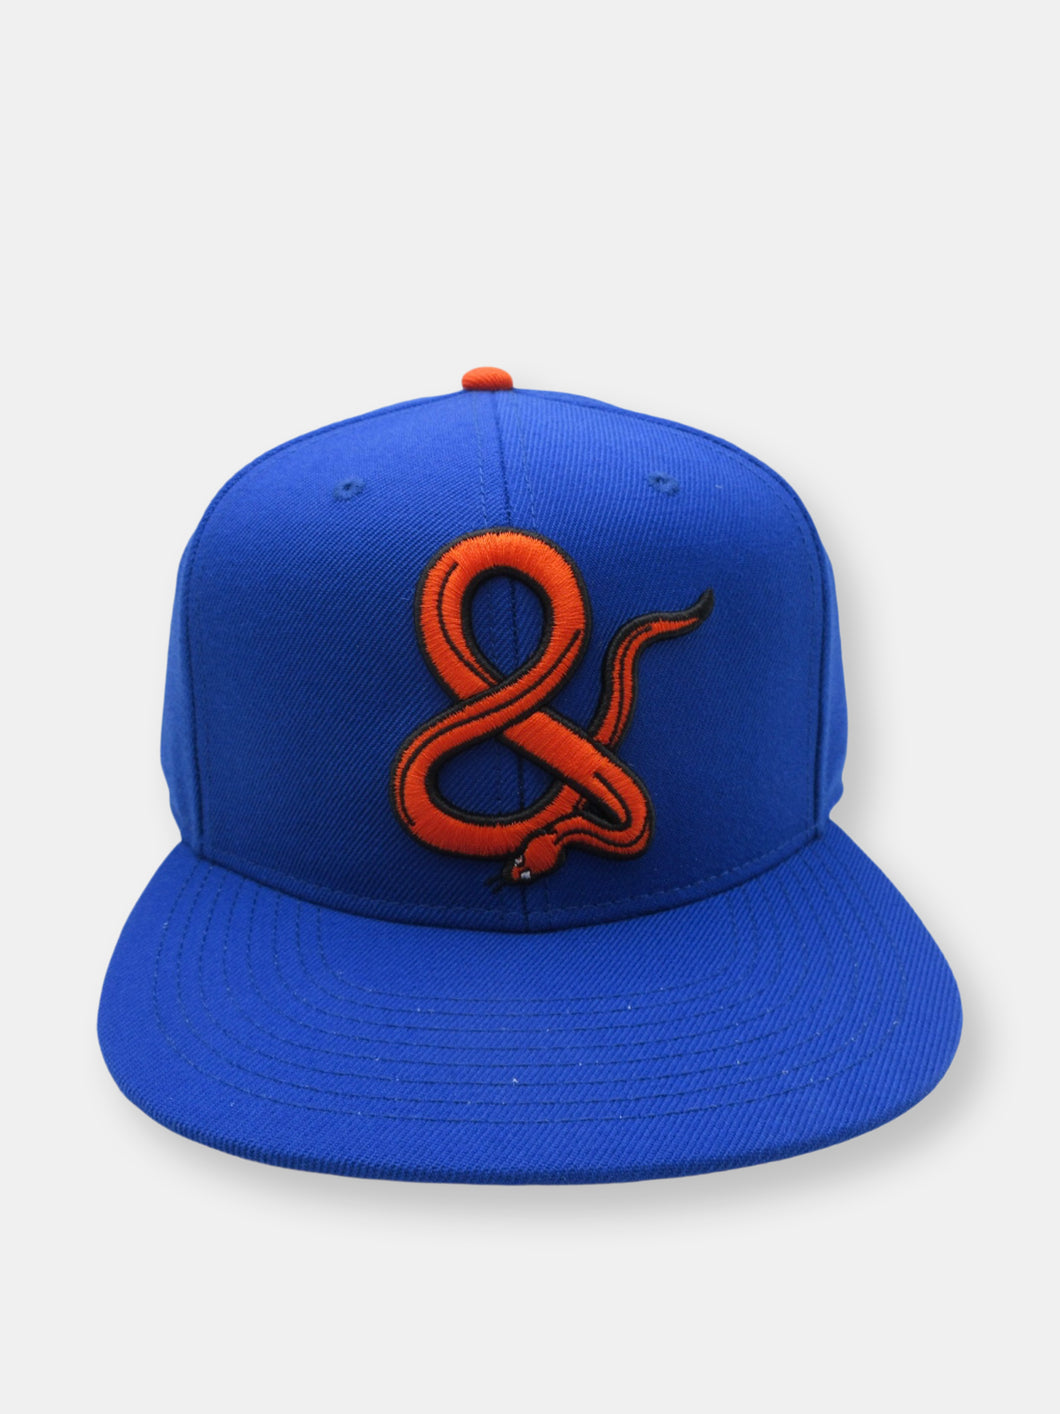 Pre-Order Ampersand Mets Cap